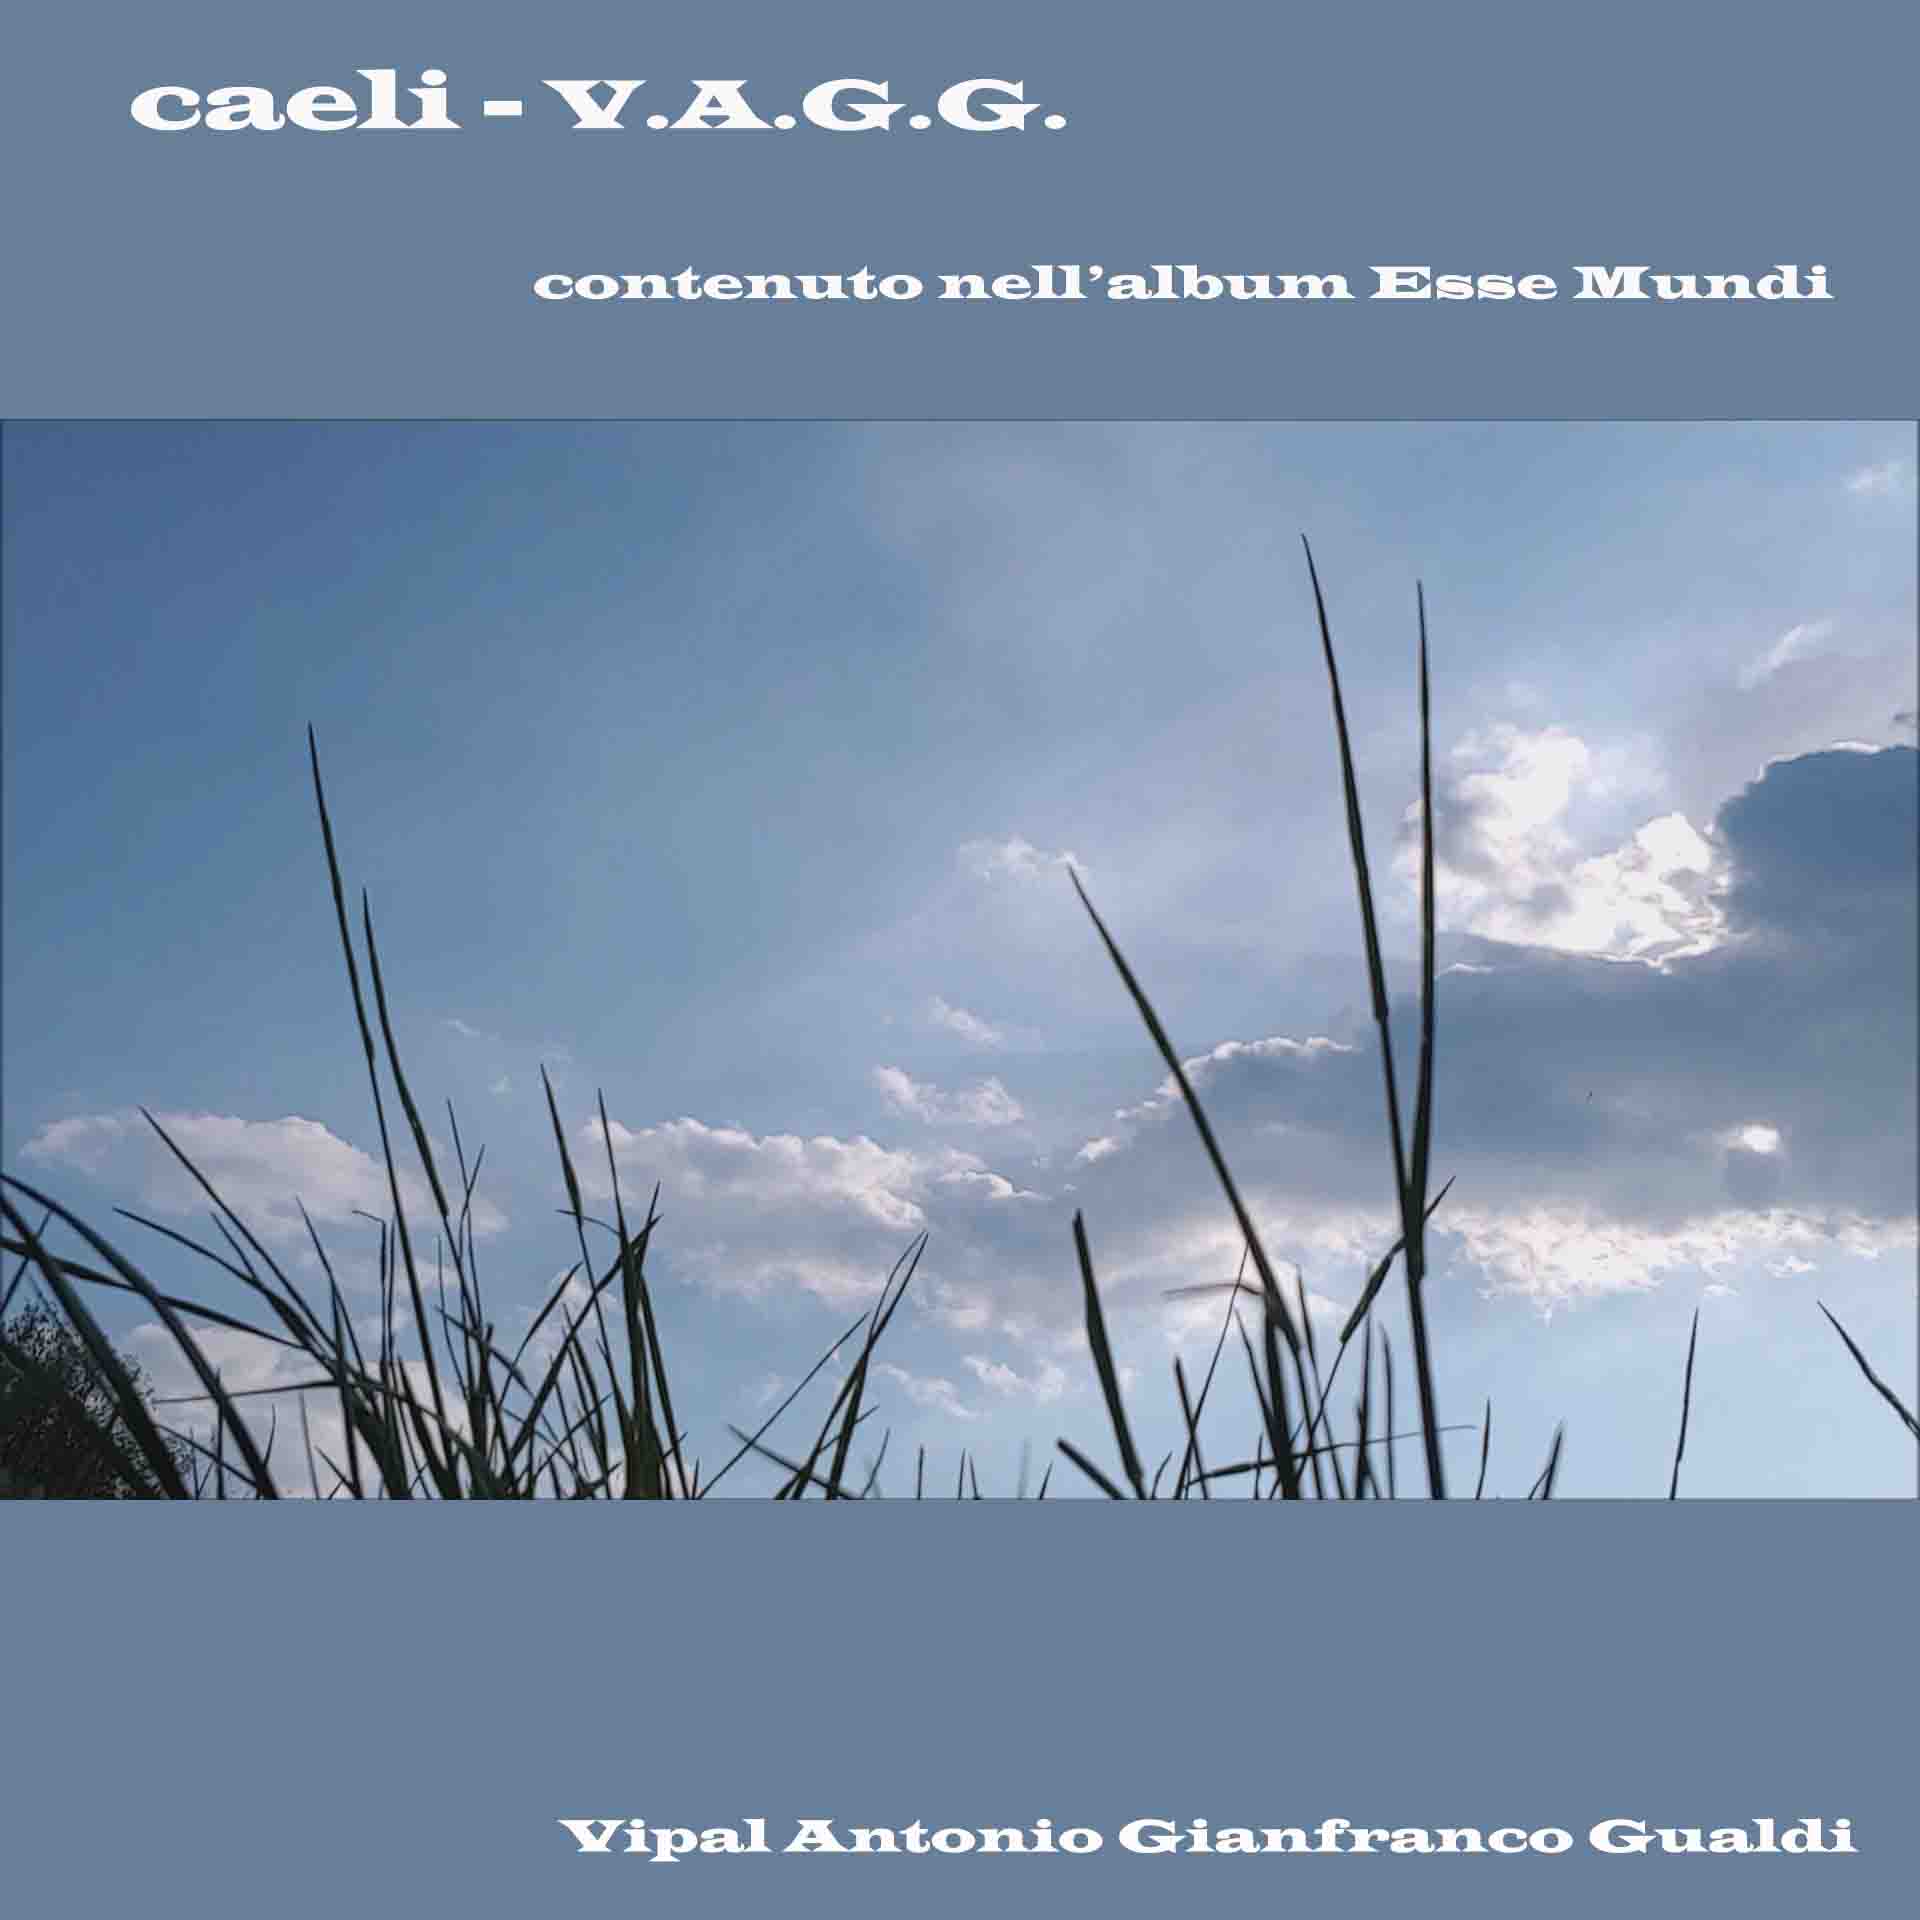 Caeli musica V.A.G.G. Vipal Antonio Gianfranco Gualdi